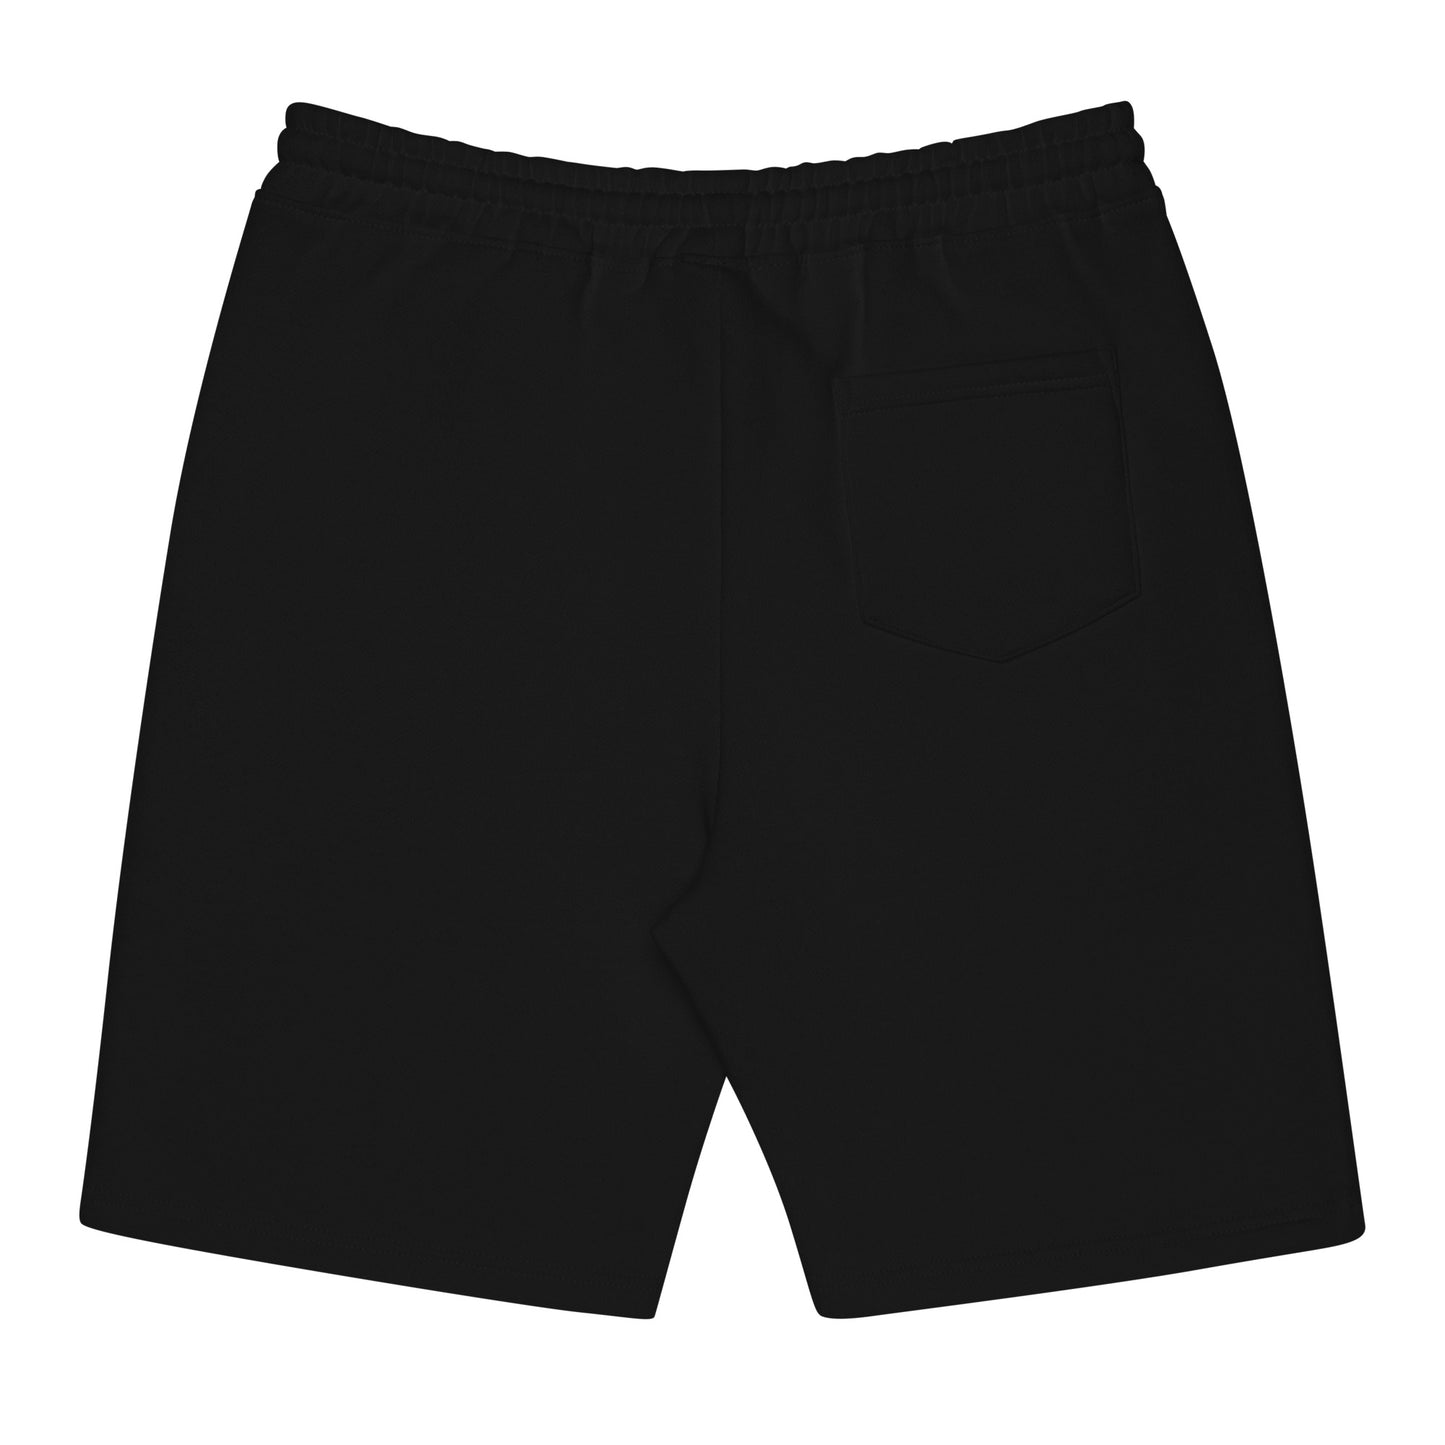 Baphomet fleece shorts